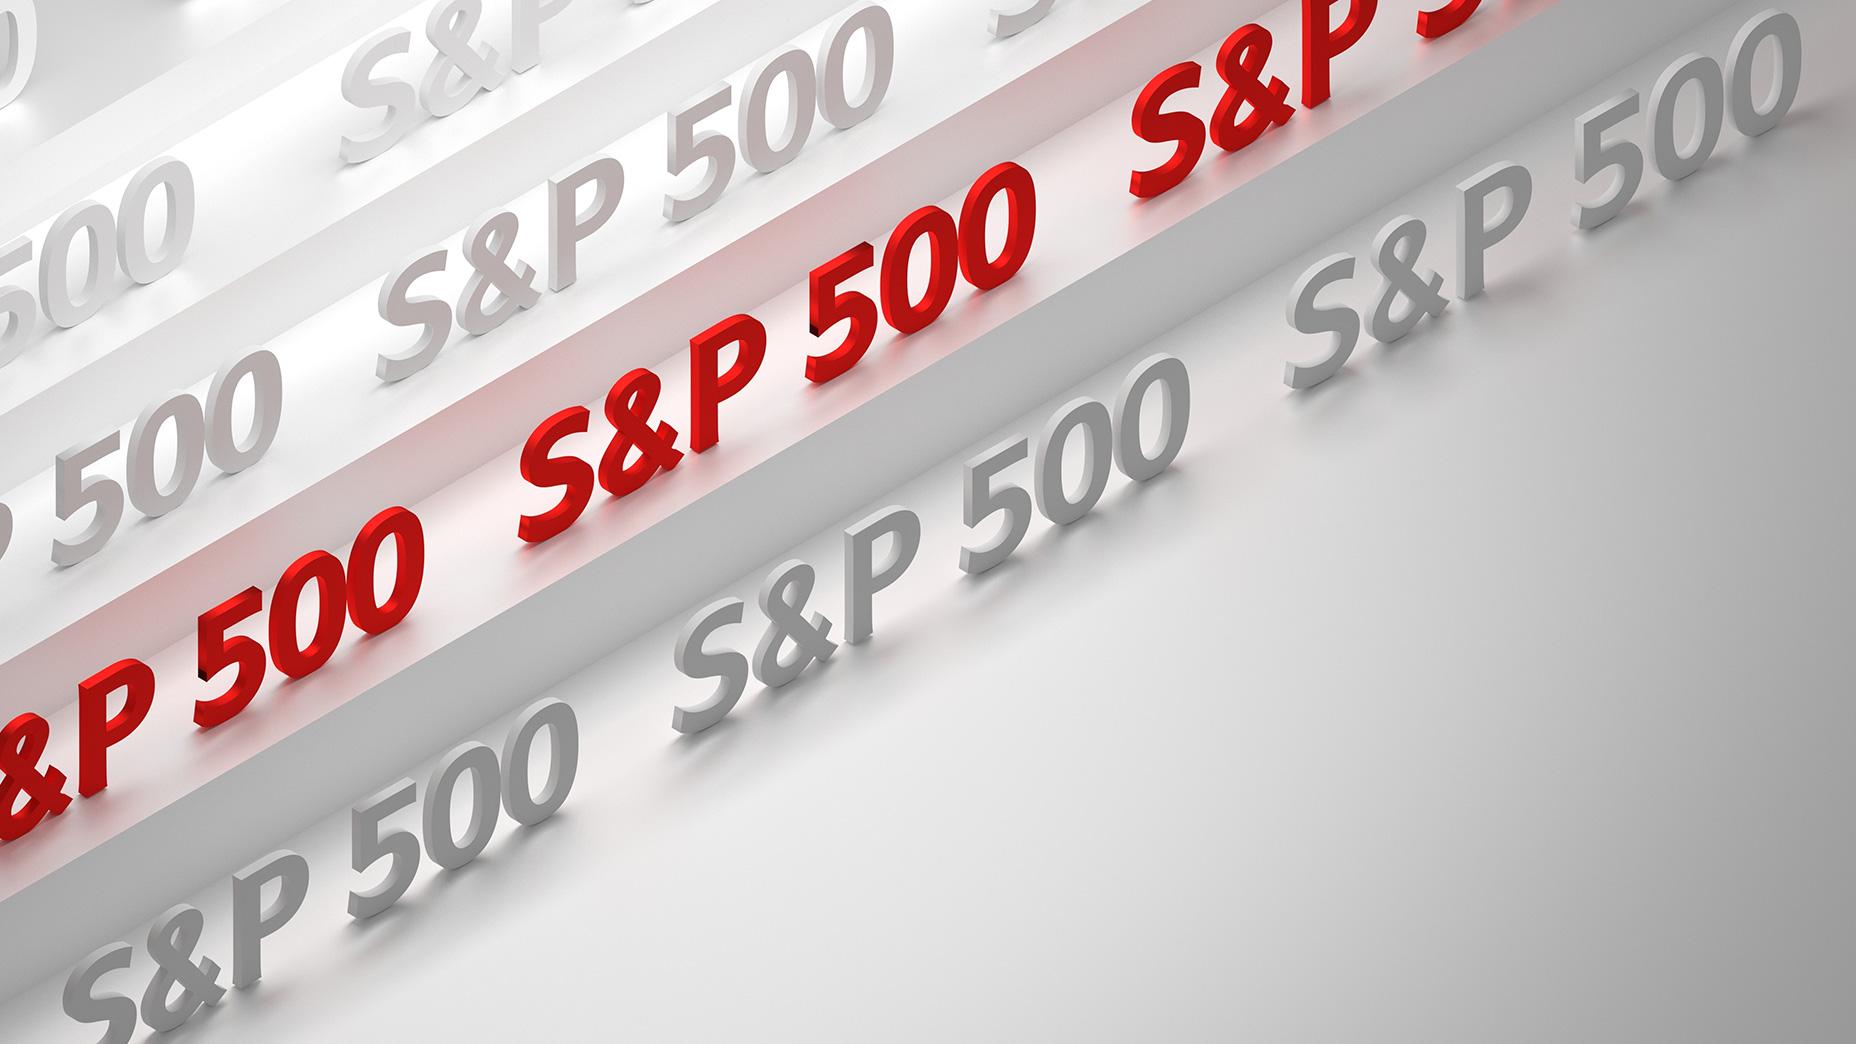 s&p 500 top stocks 2023